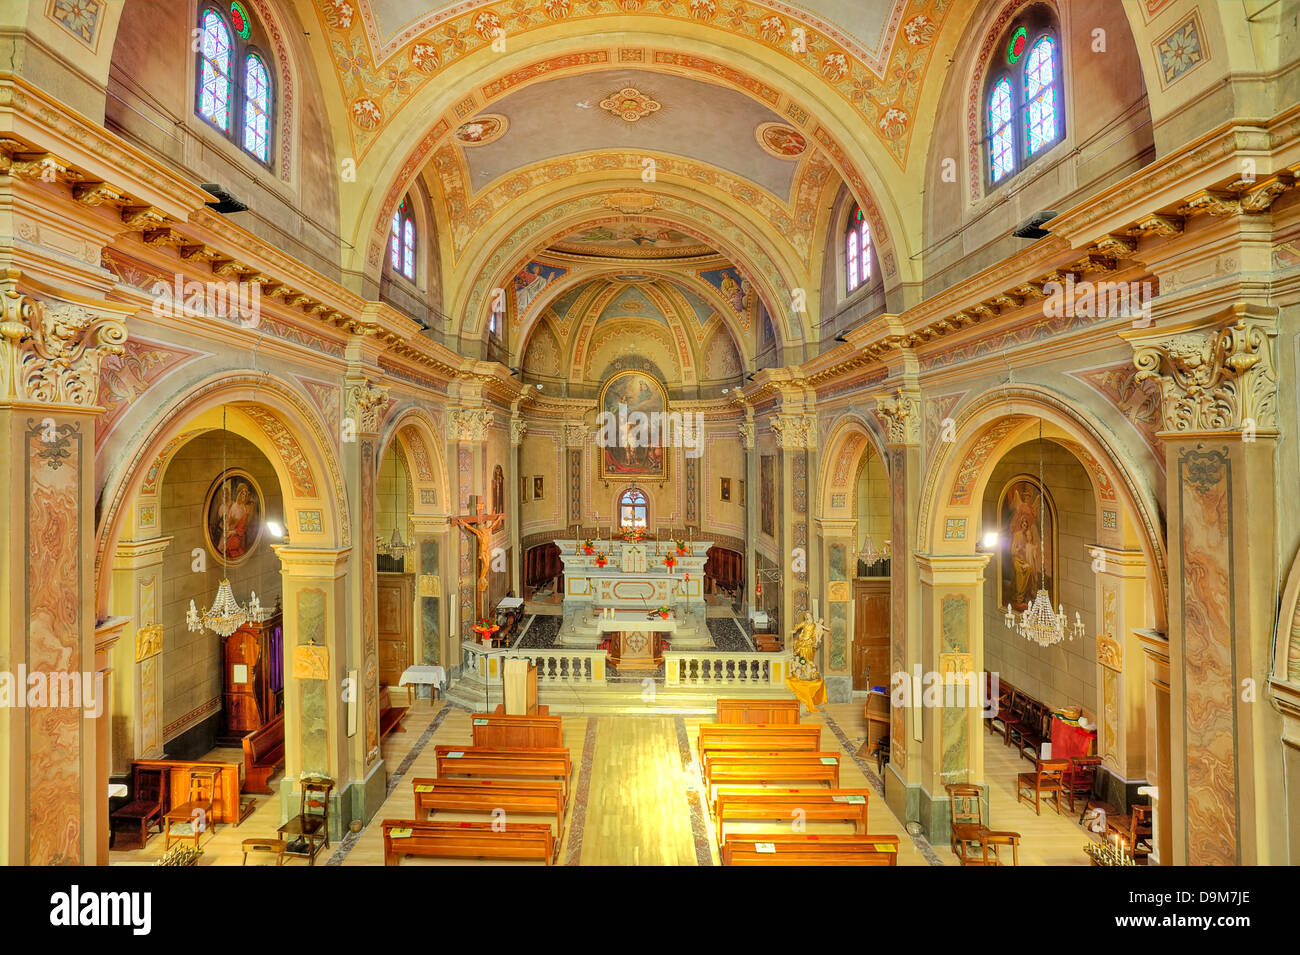 Innenansicht der kleinen katholischen Kirche in der Stadt von Serralunga D'Alba in Piemont, Italien (Ansicht von oben). Stockfoto